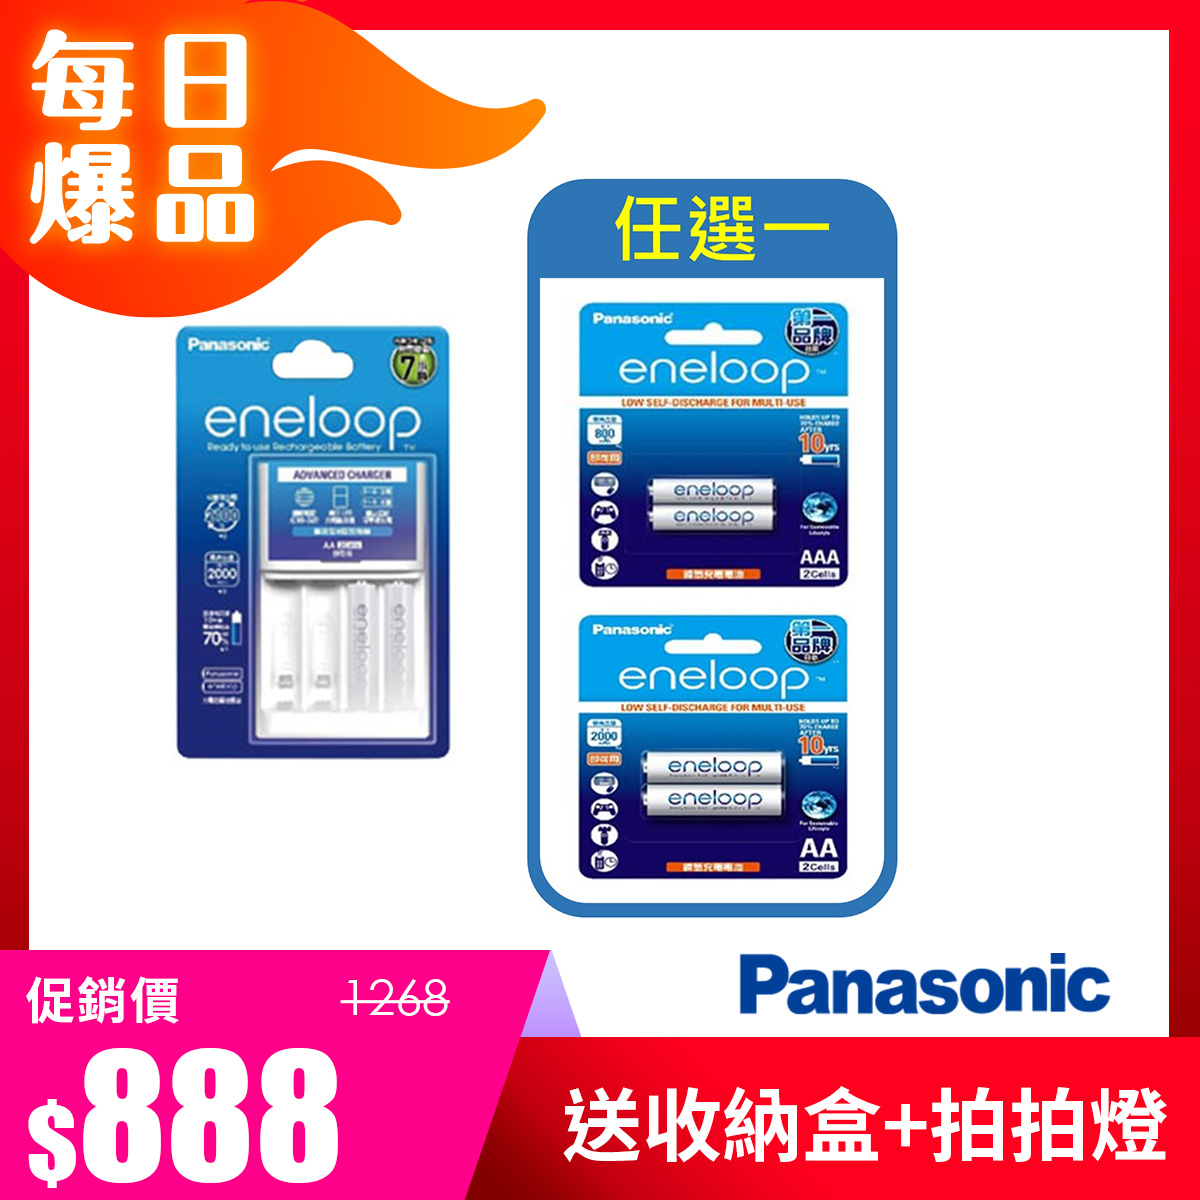 特惠組合 | 國際牌Panasonic 充電器+eneloop充電電池3號2入 + 3號/4號電池二入(任選一)